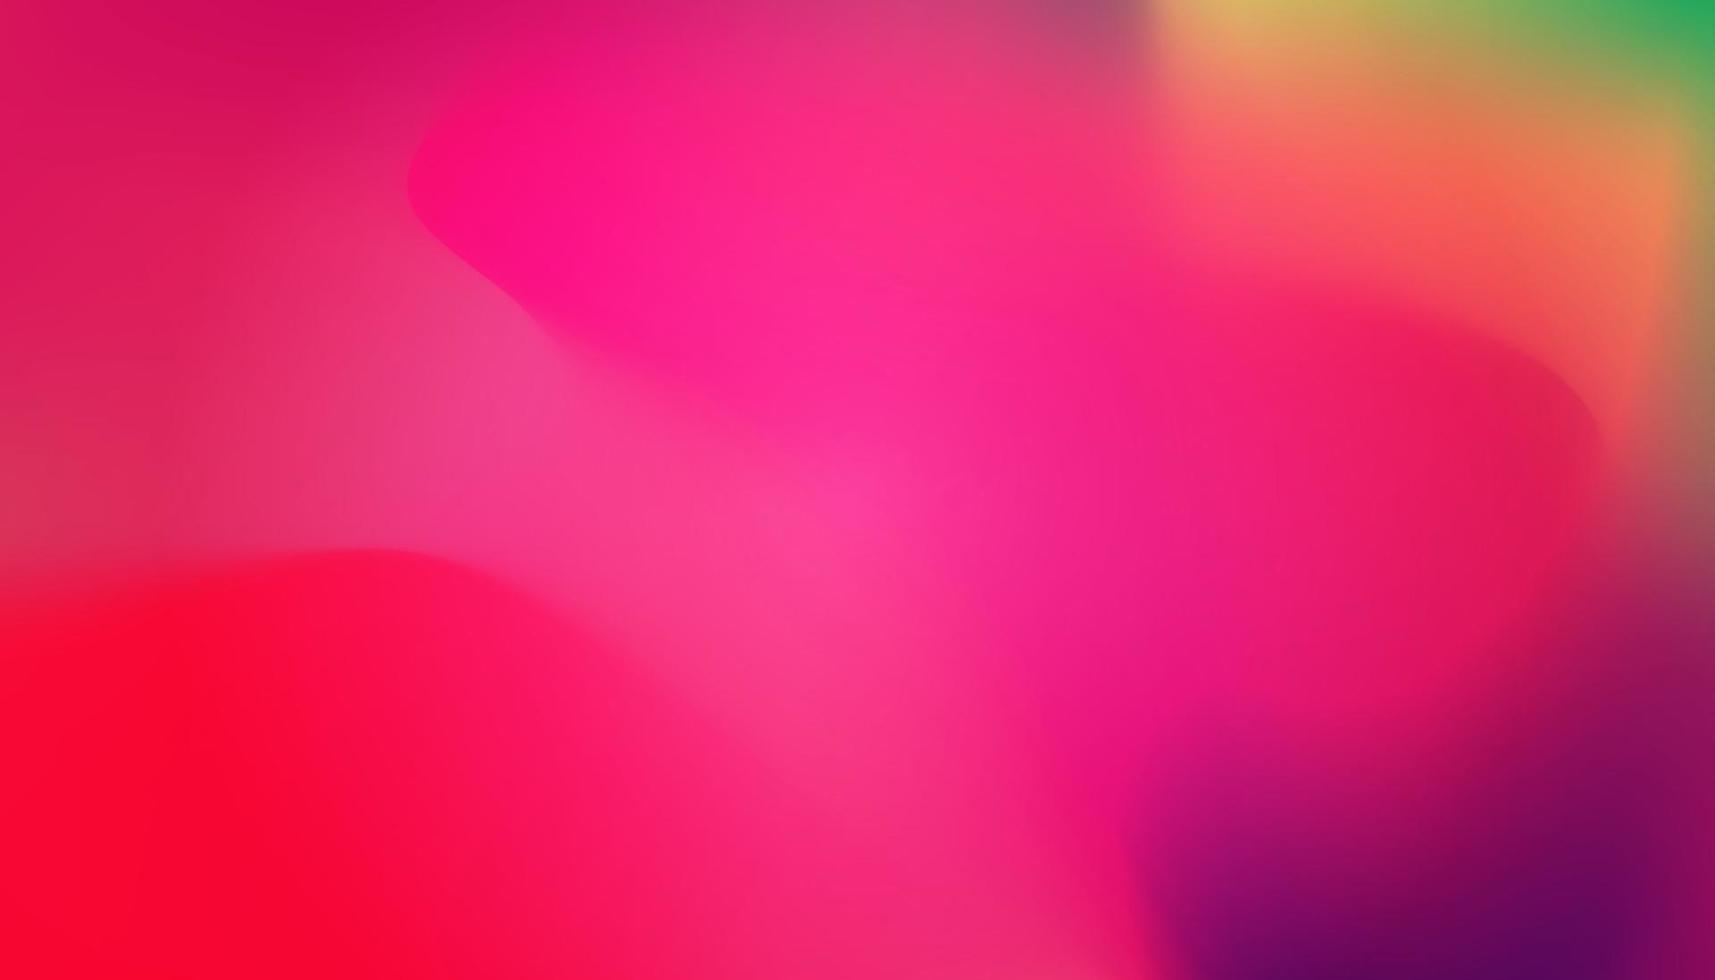 abstrakt blå lila och rosa mjuk molnbakgrund i pastellfärgad gradering. vektor